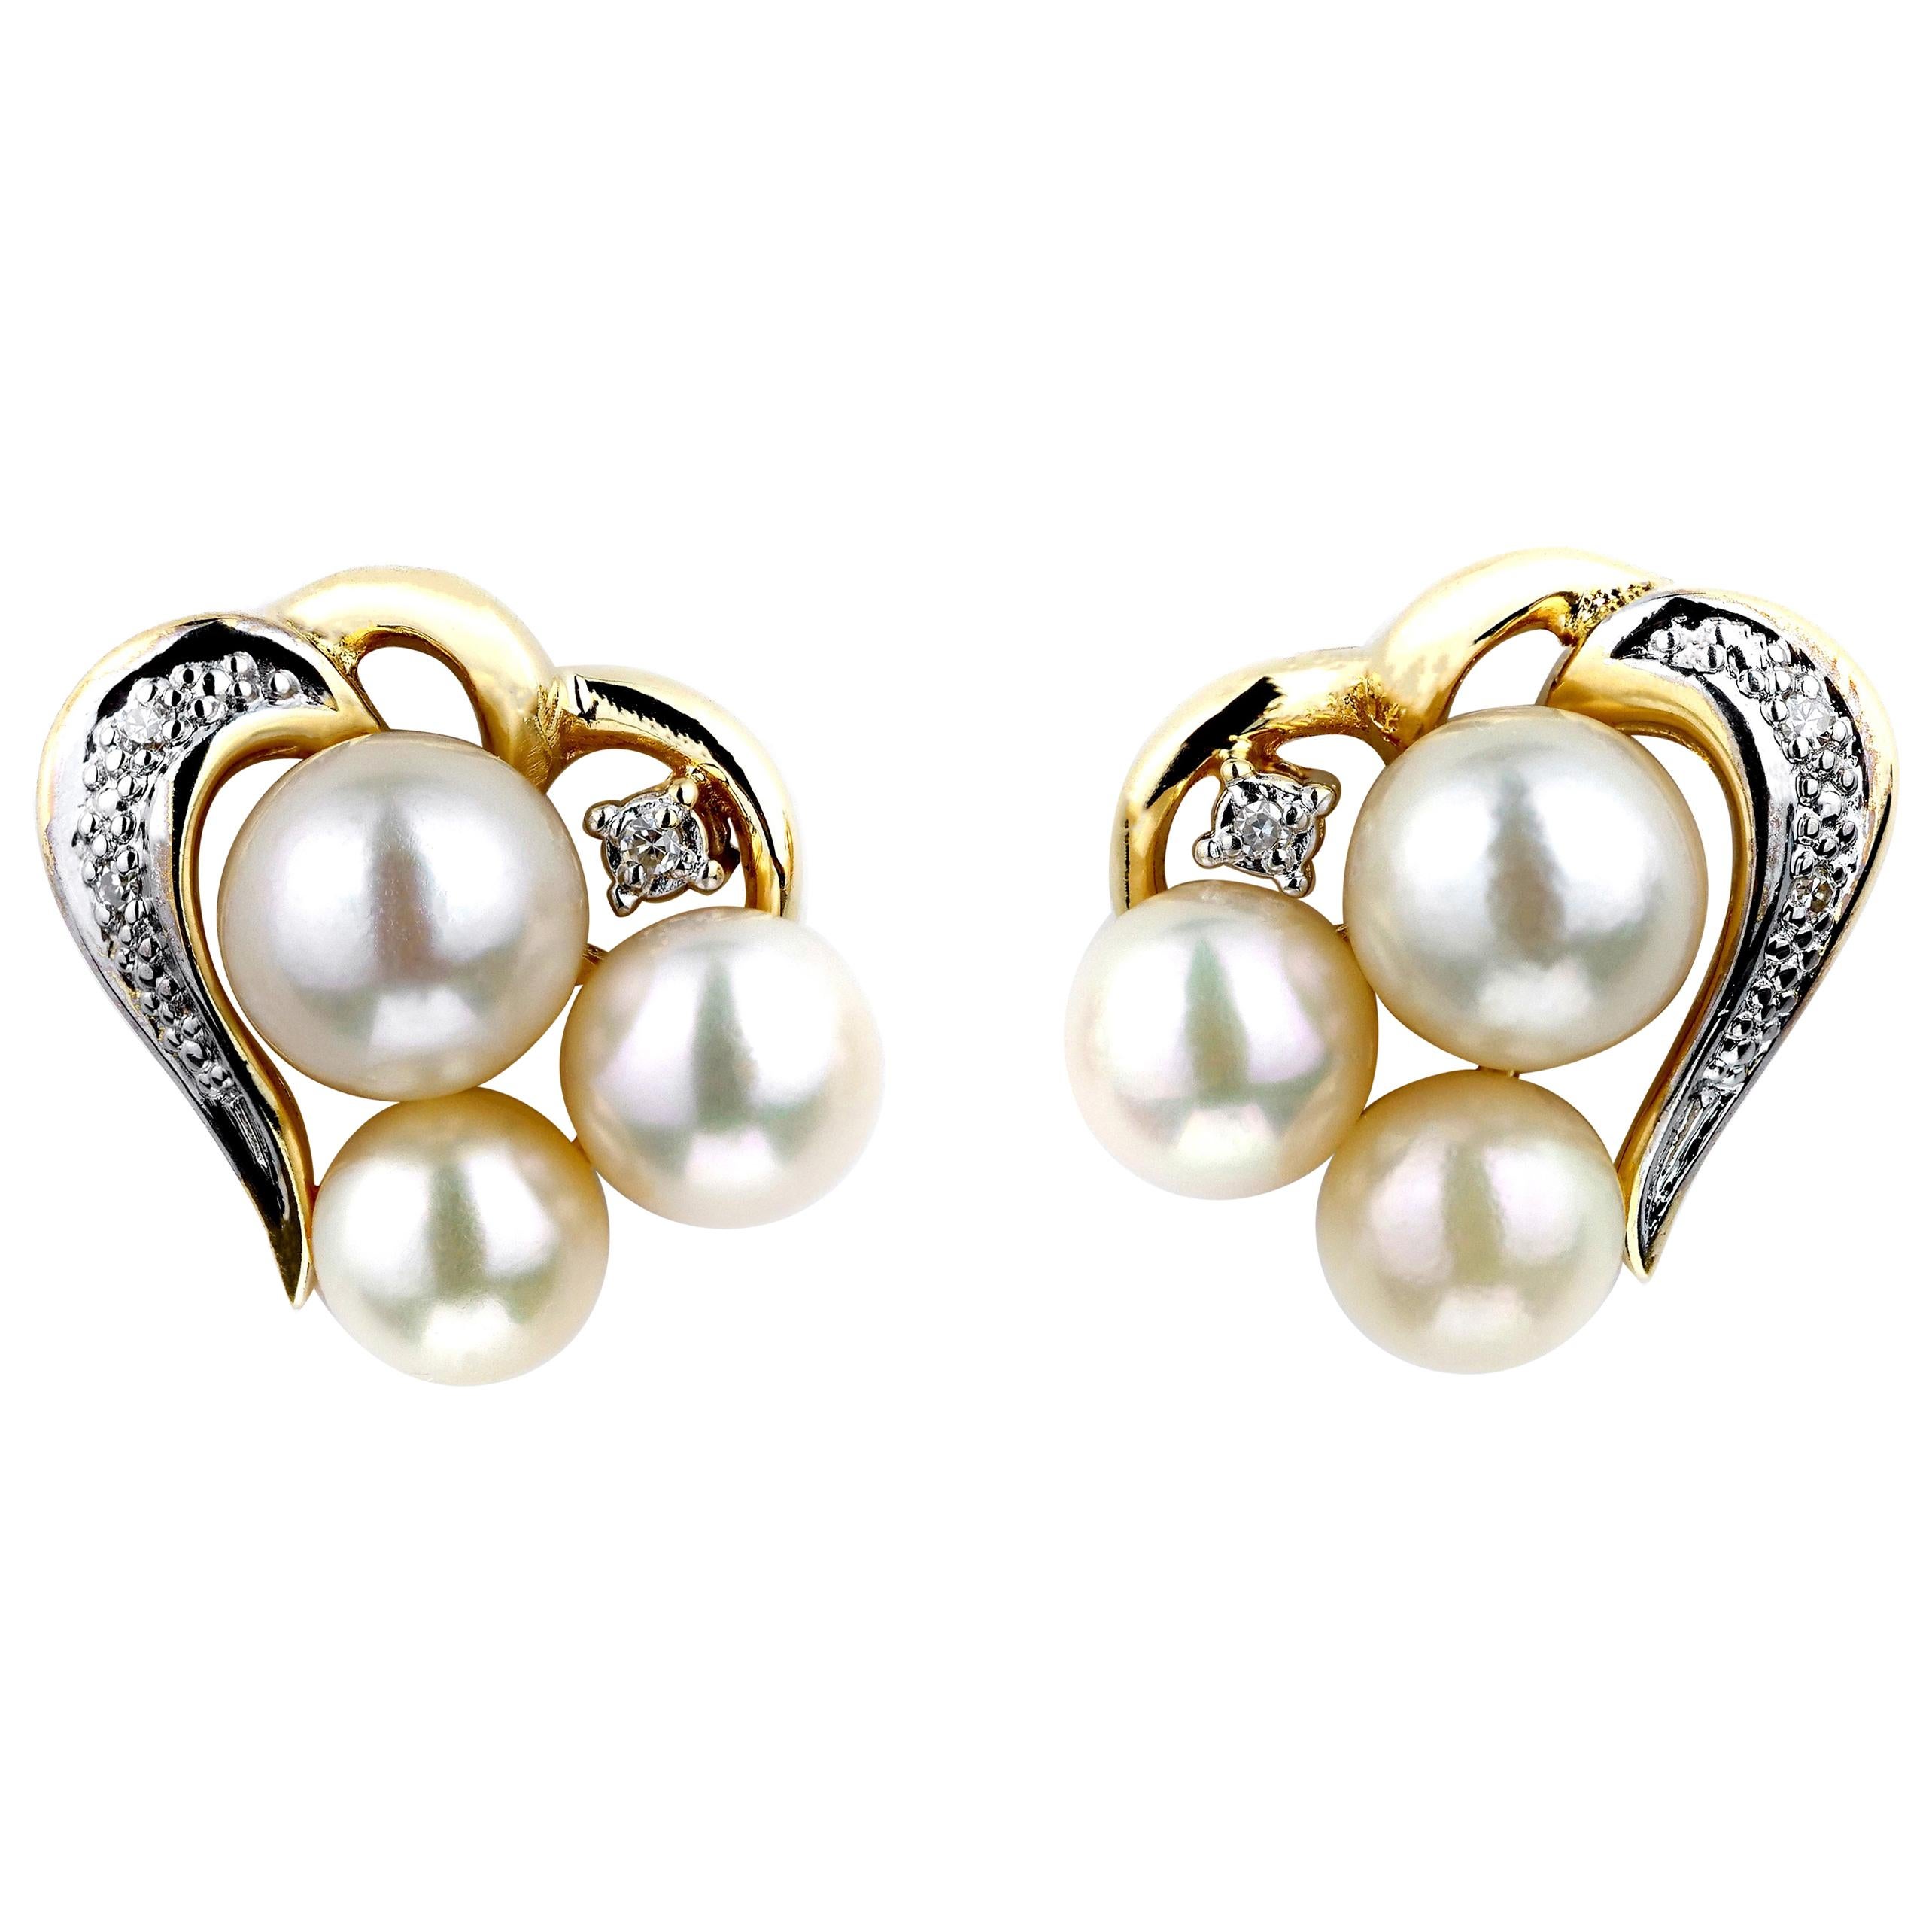 Boucles d'oreilles cœur/amour en or 18 carats, perles et diamants